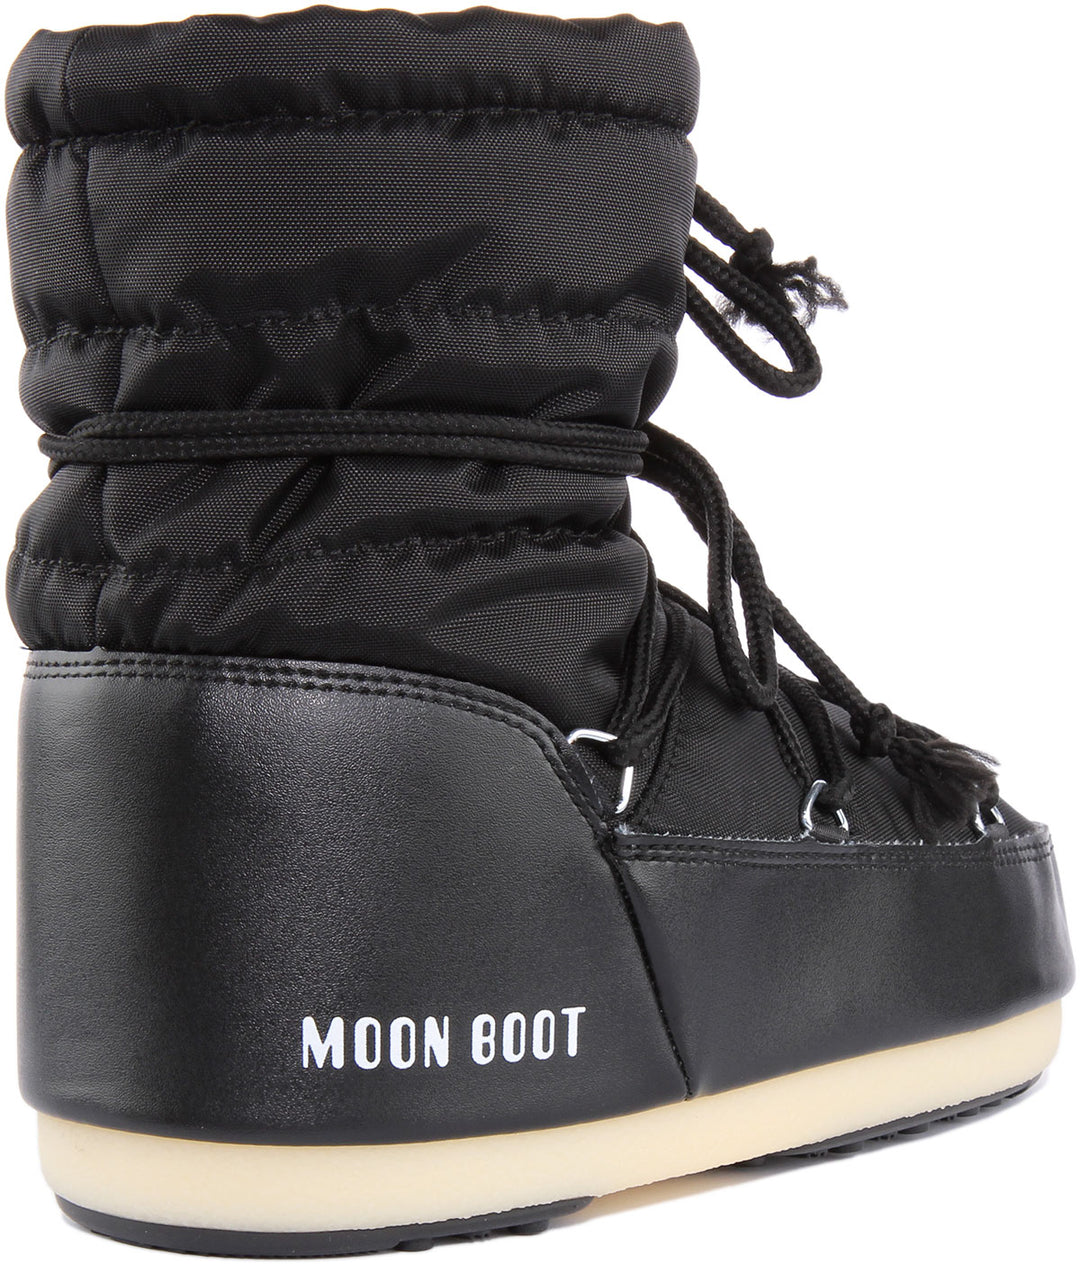 Moon Boot Nylon Light Low In Black For Women